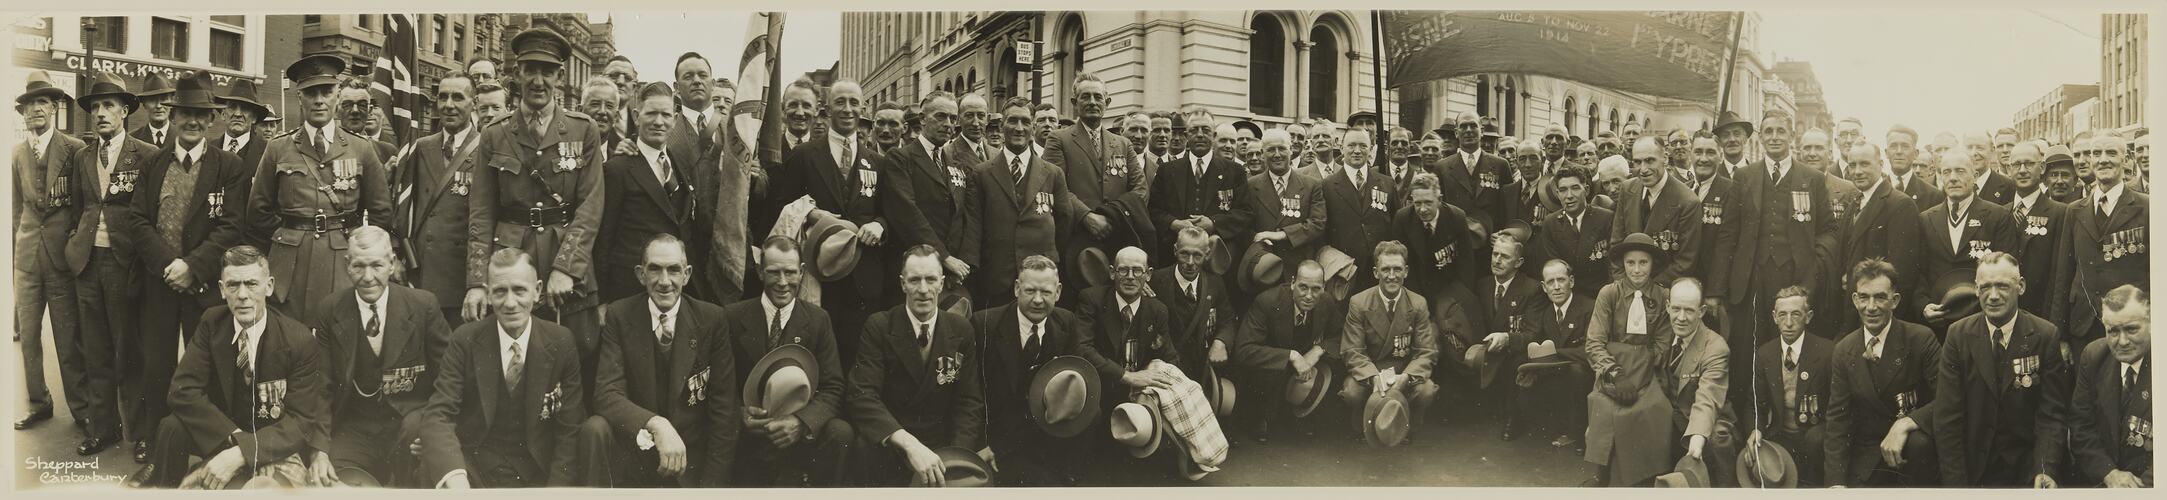 Anzac Day Marchers, Melbourne, circa 1930s